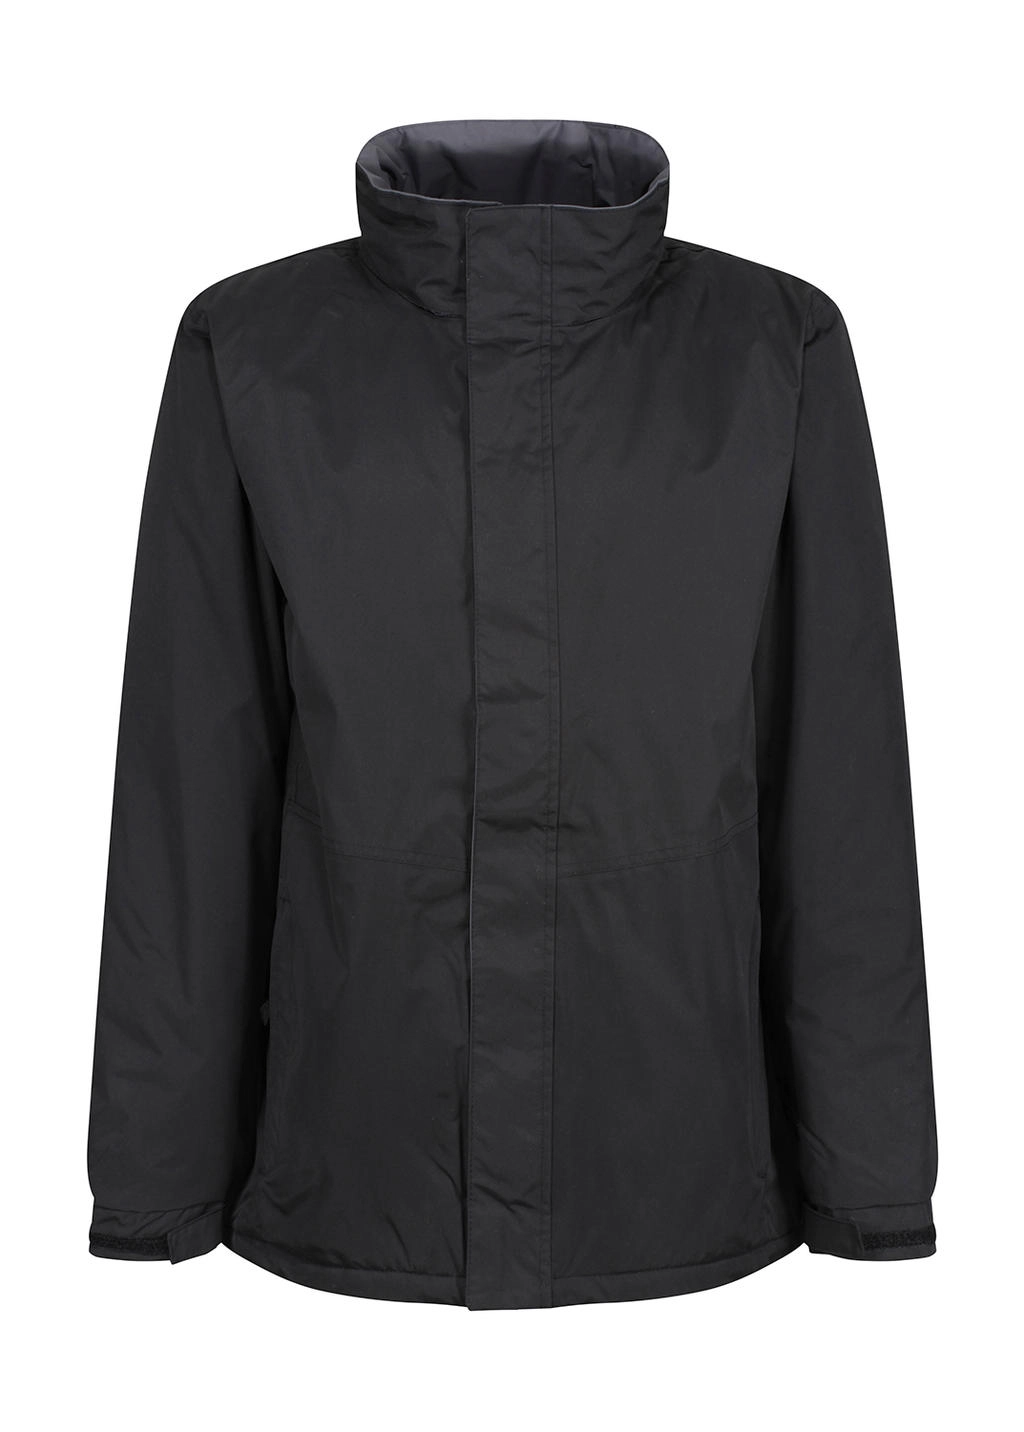 Beauford Insulated Jacket zum Besticken und Bedrucken in der Farbe Black mit Ihren Logo, Schriftzug oder Motiv.